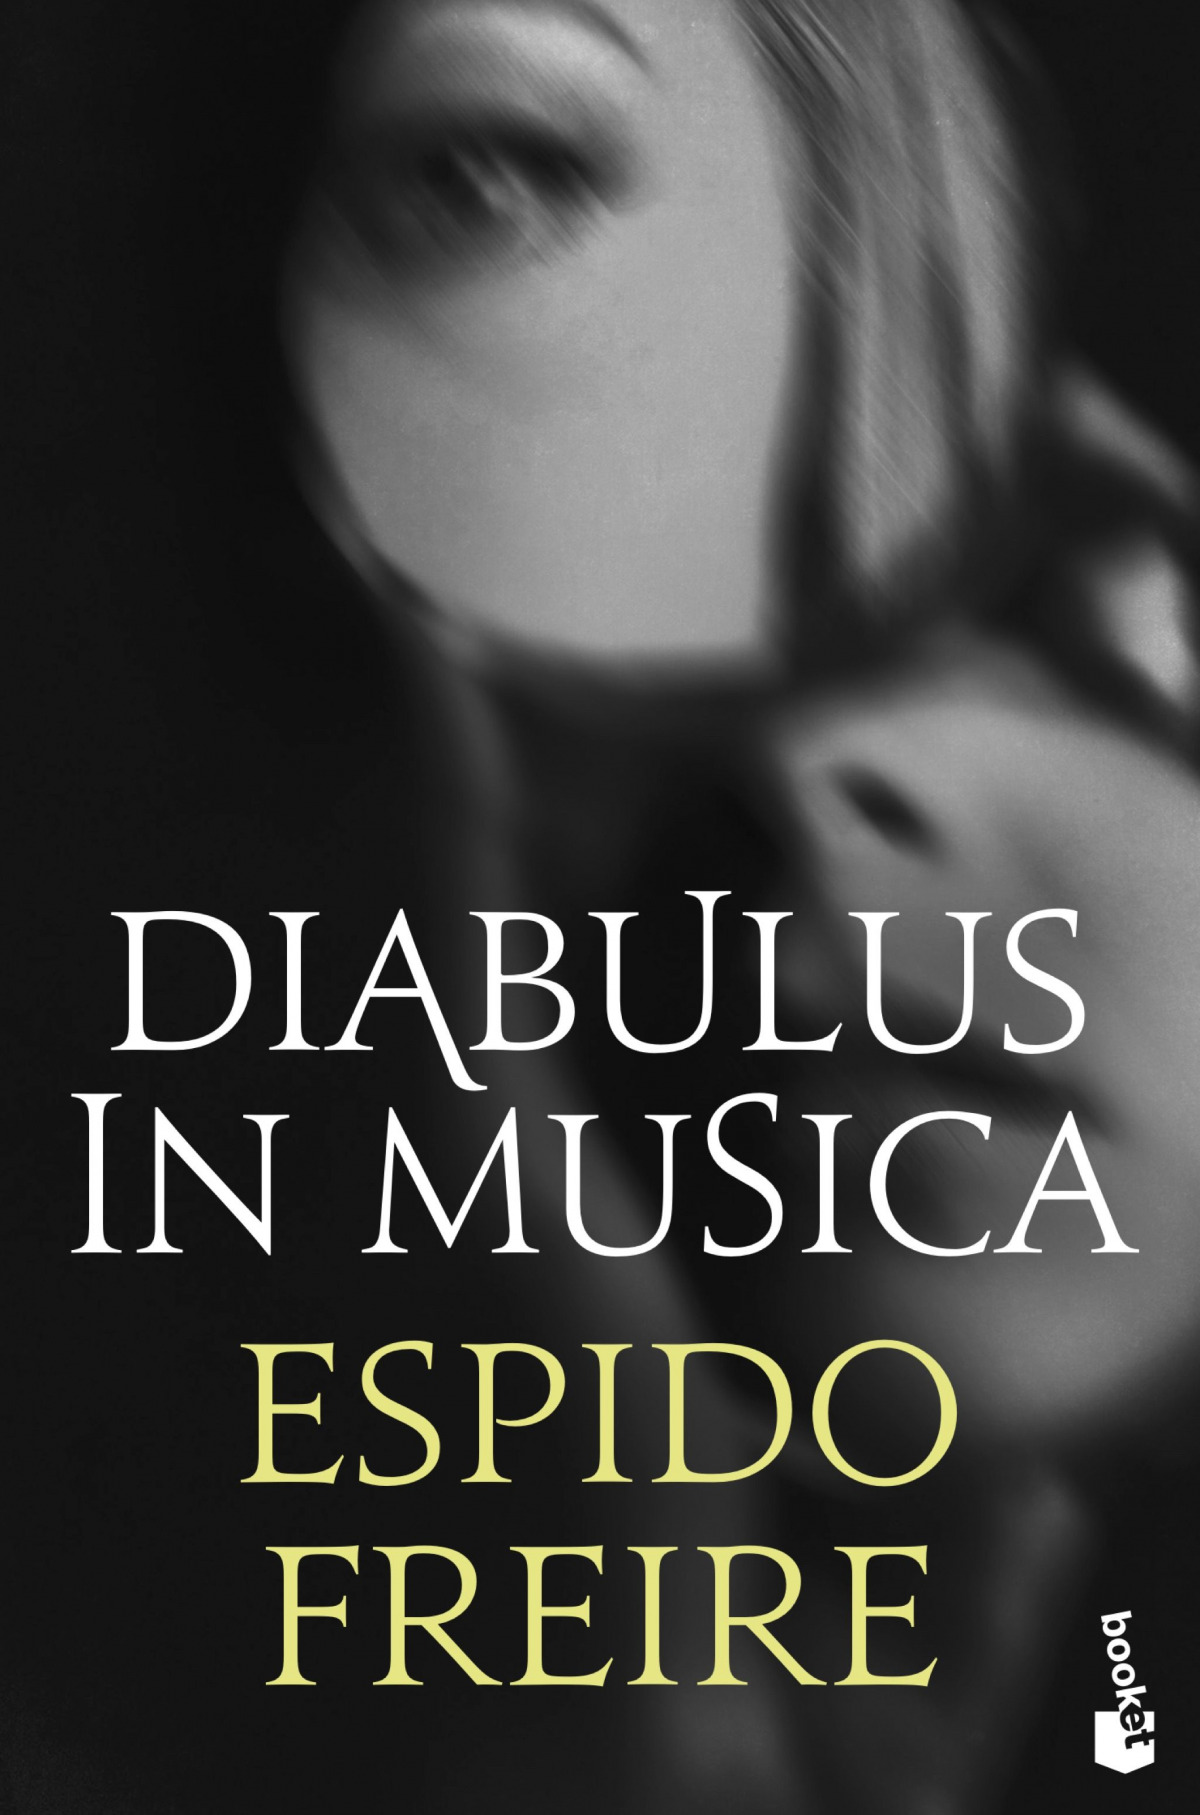 Diabulus in musica - Freire, Espido